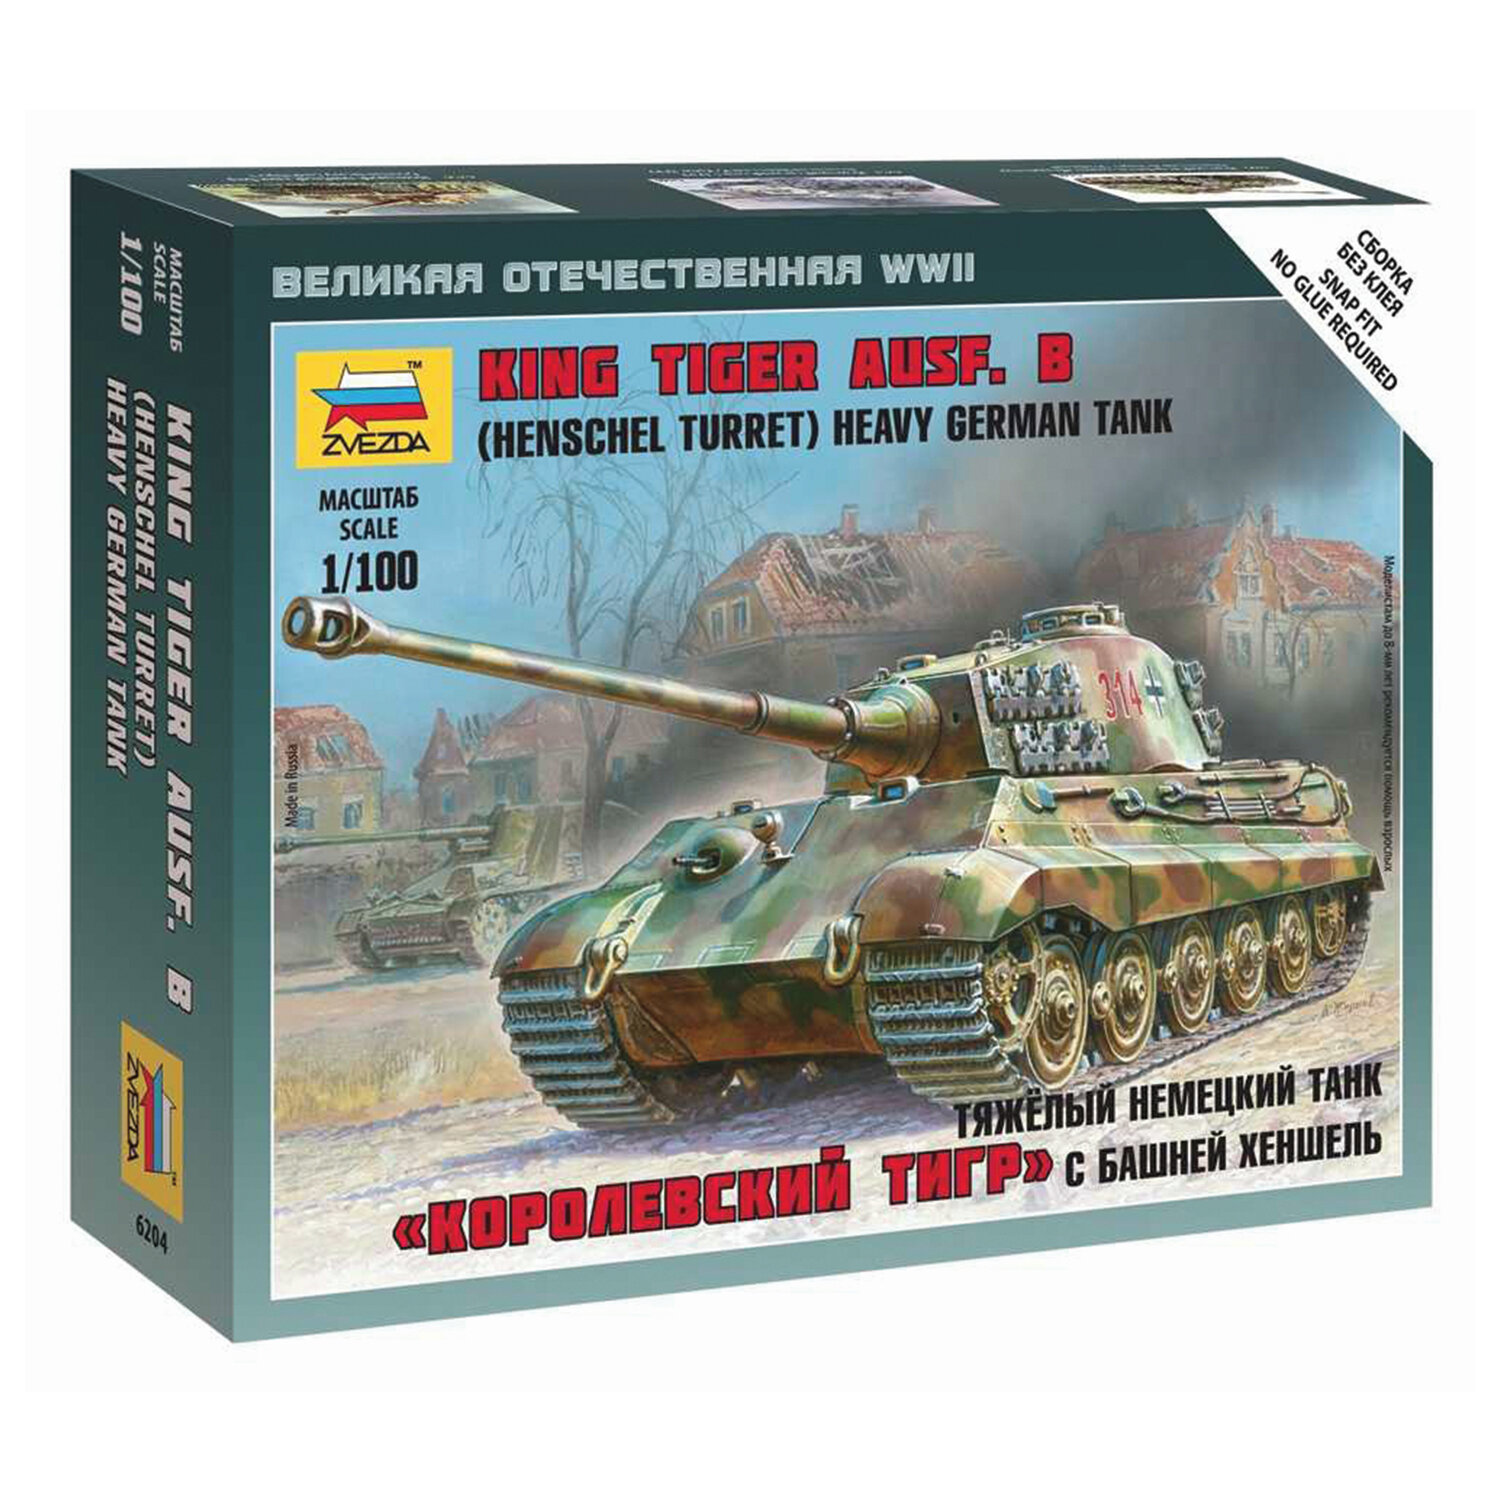 Сборная модель Звезда Тяжелый немецкий танк Королевский Тигр с башней Хеншель, 1/100 6204